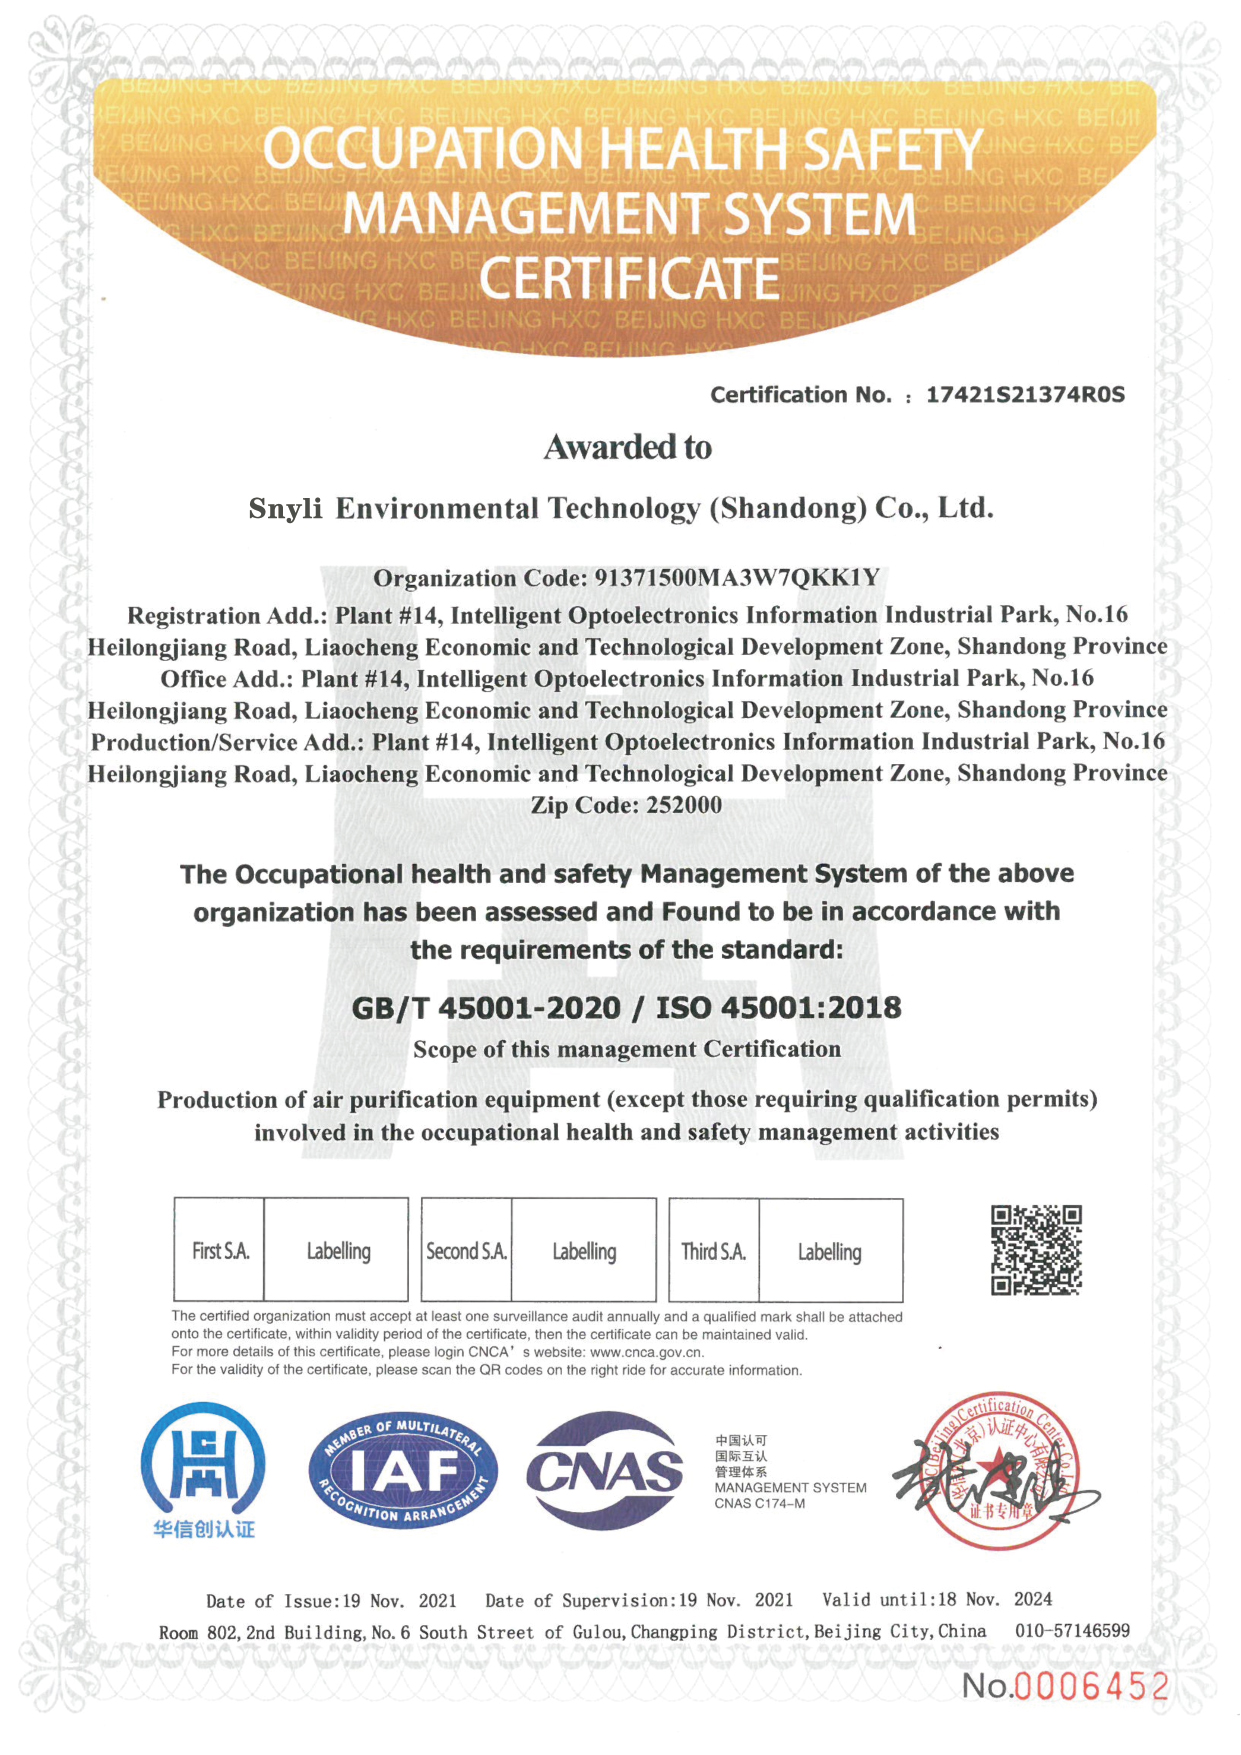 新力环境三体系认证英文版0331-03